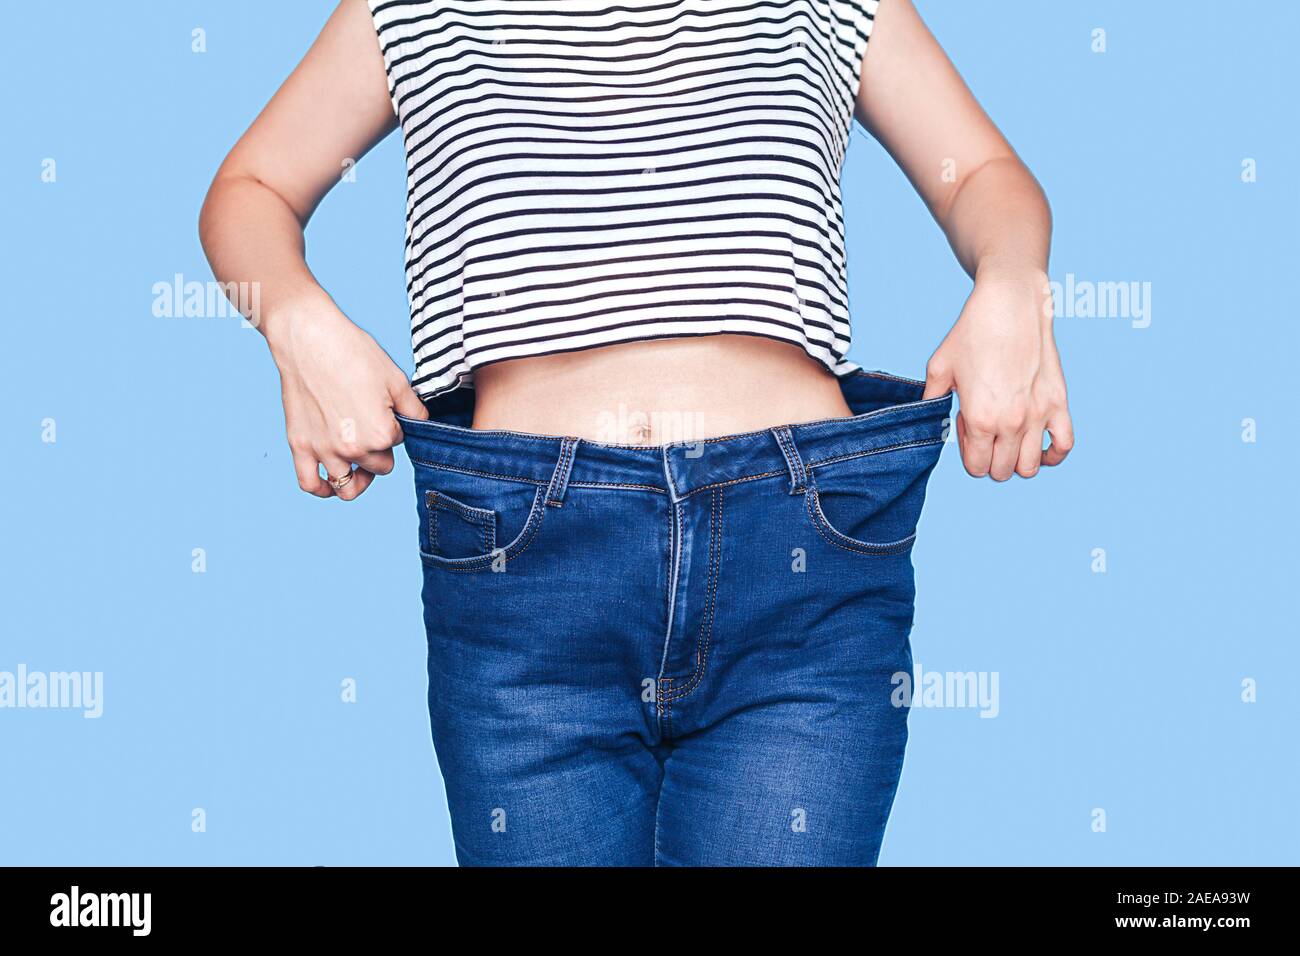 Cuerpo de mujer skinny jeans pantalones flojos Fotografía de -